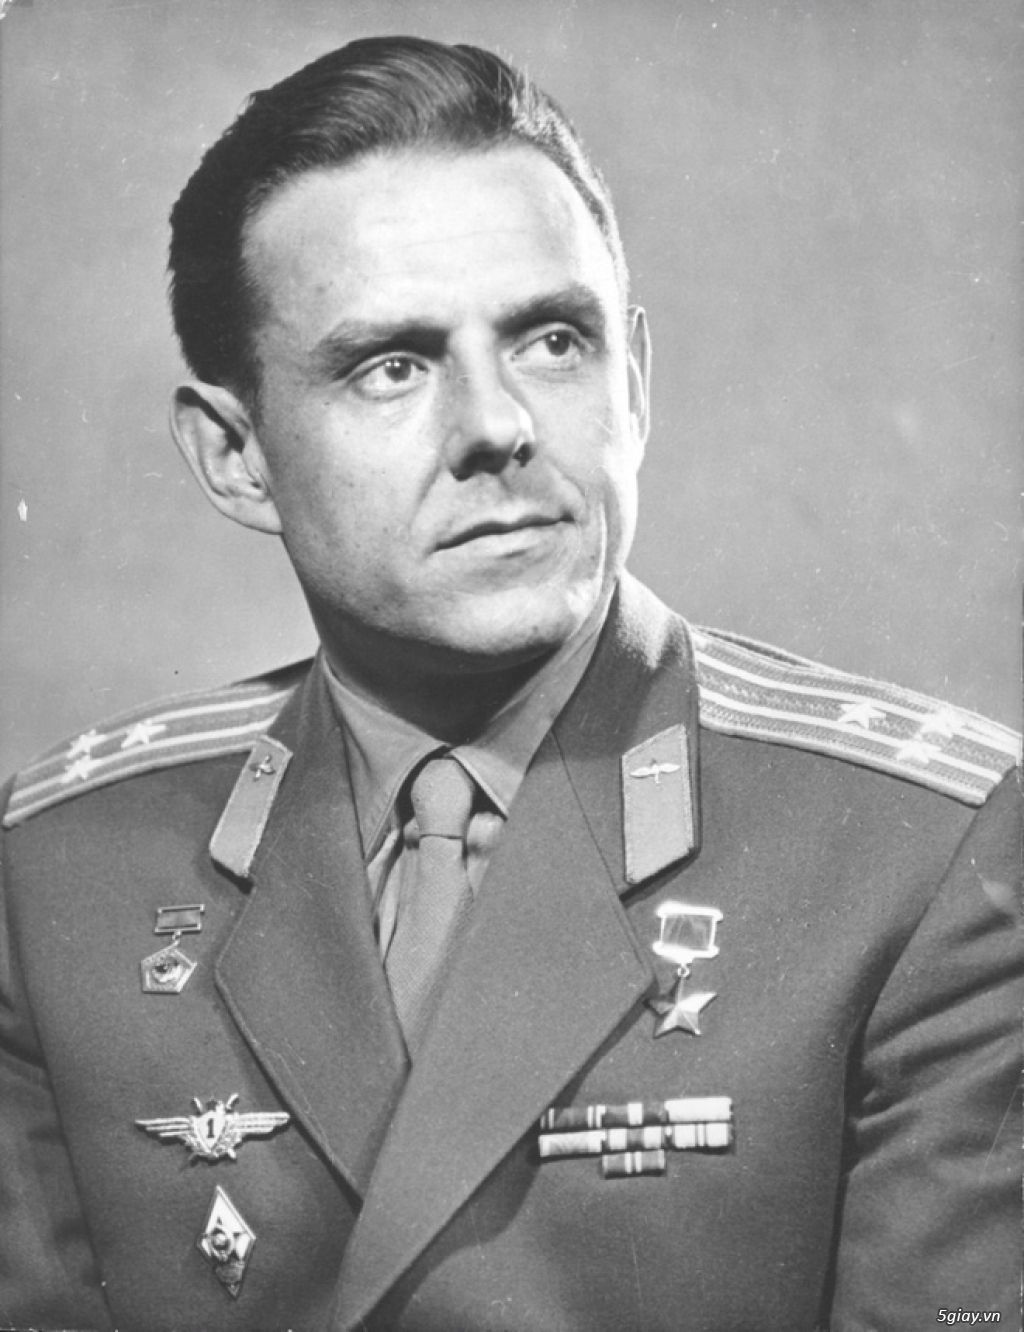 Bí mật sứ mệnh tự sát của phi hành gia Liên Xô: Cái chết của anh làm nhiều người bật khóc!